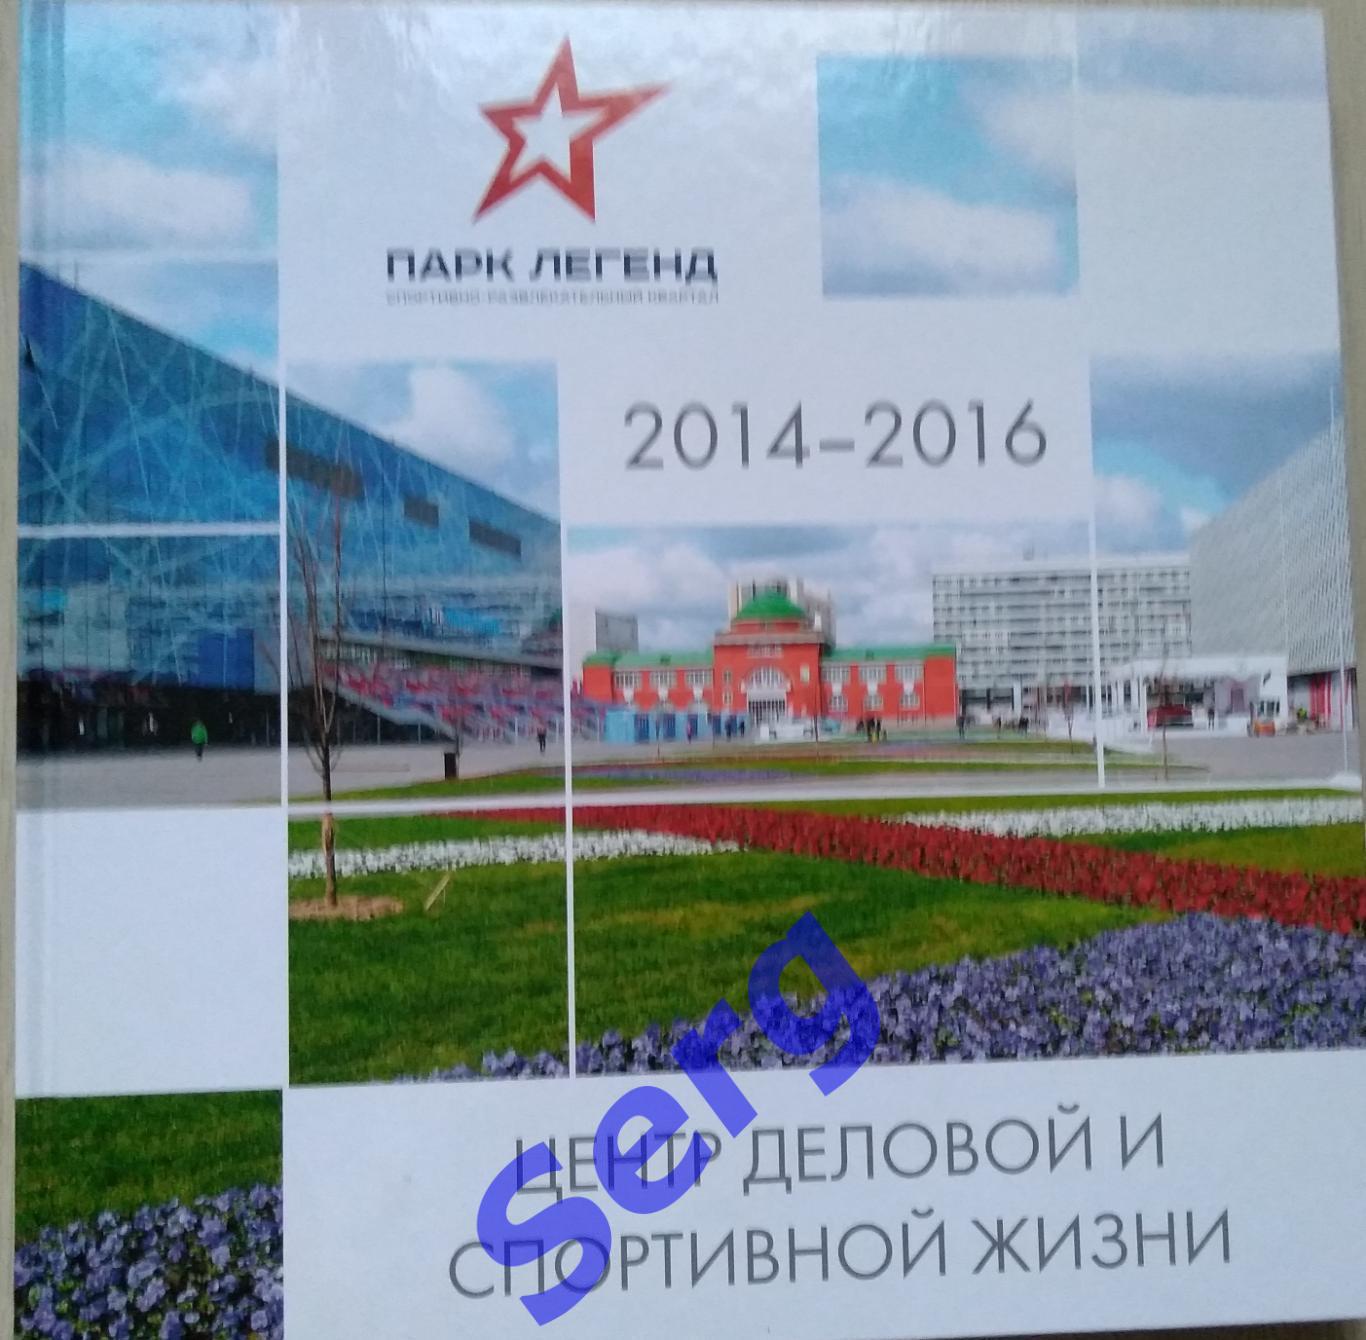 СРК Парк Легенд 2014-2016 г.г. Центр деловой и спортивной жизни.